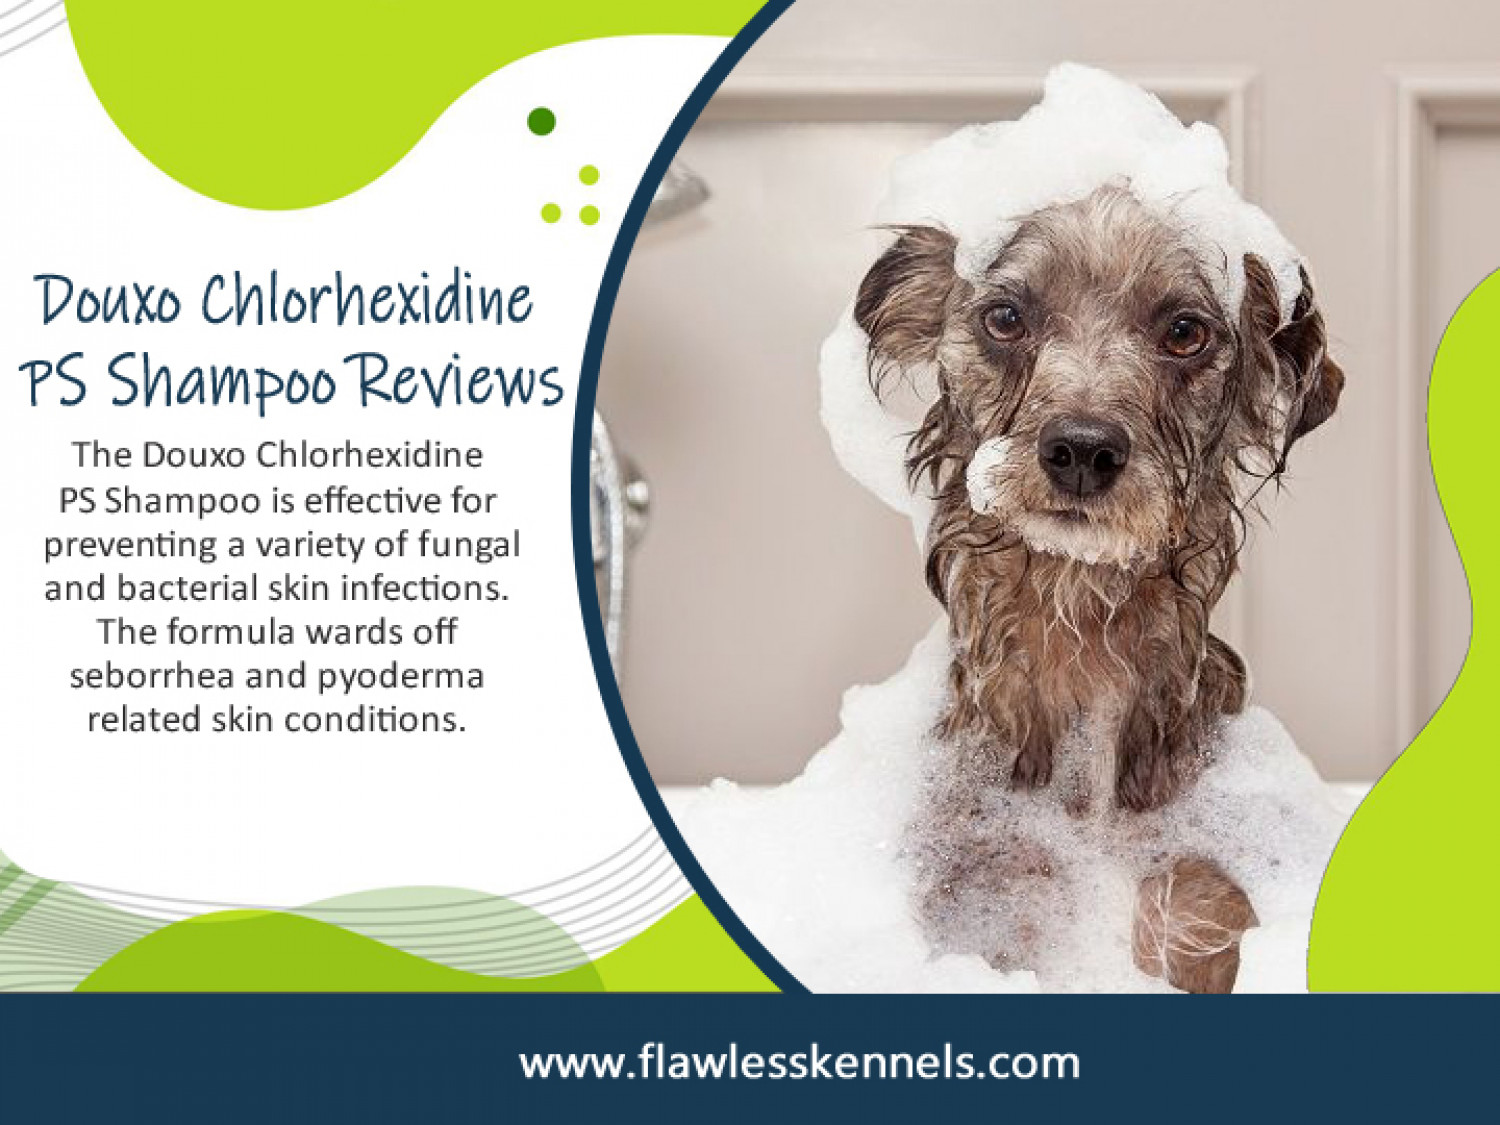 Douxo Chlorhexidine PS Shampoo Reviews Infographic